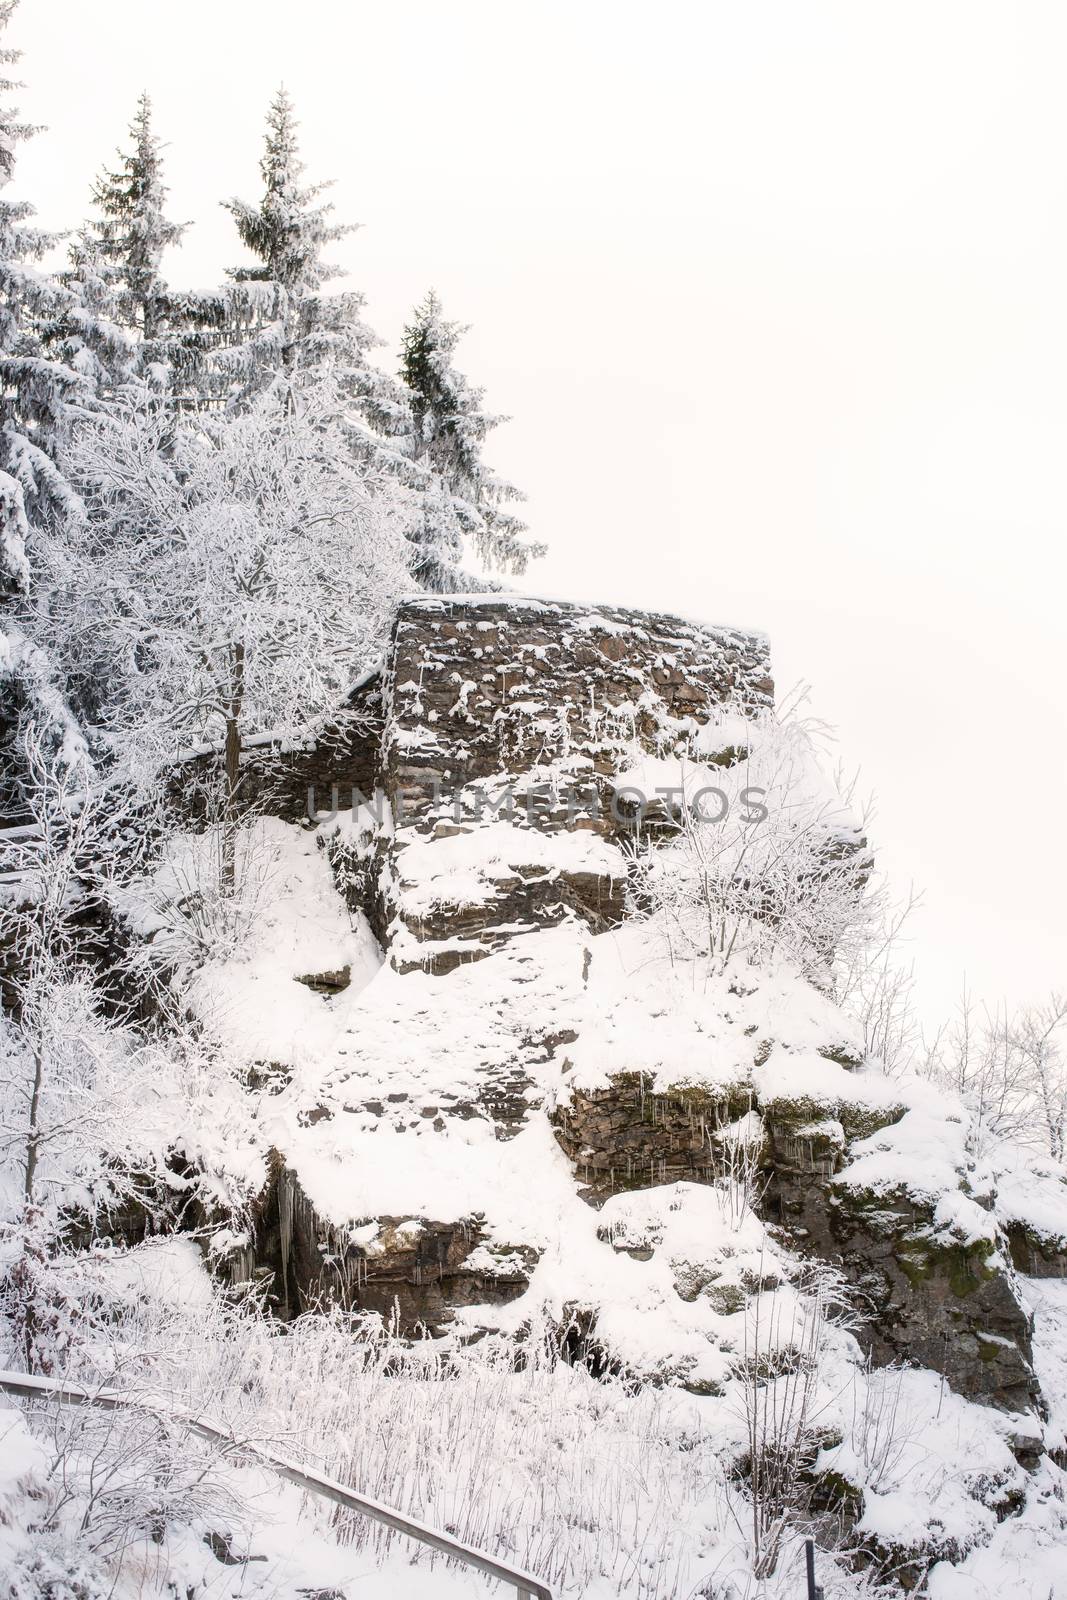 Hindenburgkanzel in the winter with snow, Bavaria